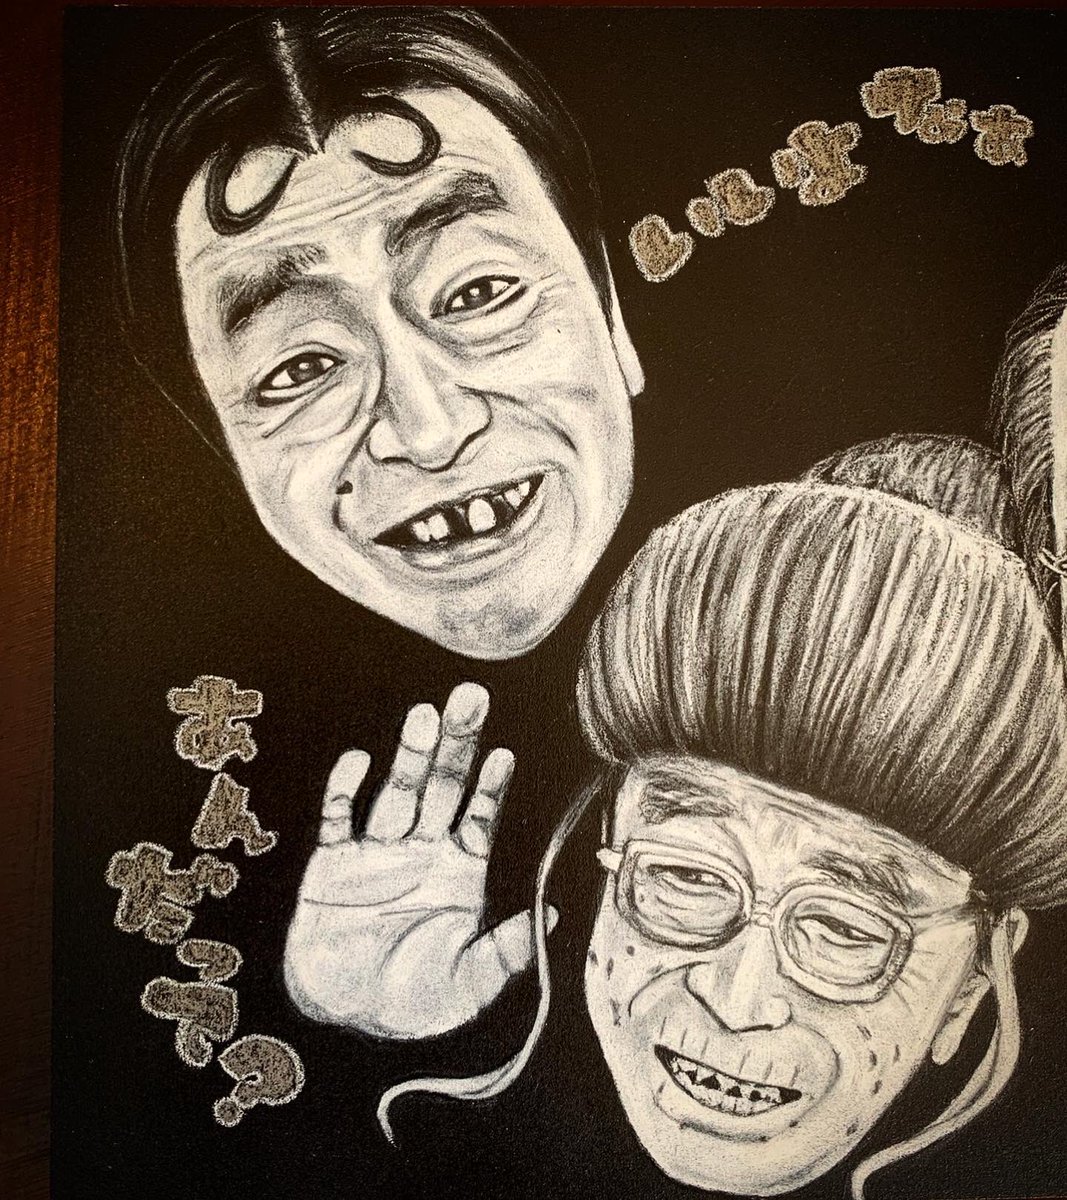 夢梟 追悼の意を込めて描かせていただきました 日本の宝です 心からご冥福をお祈りいたします Chalkart Blackboard Artist Japanese Comedian Yokosuka チョークアート 黒板アート アーティスト 志村けん パンくん ひとみばあさん いいよな